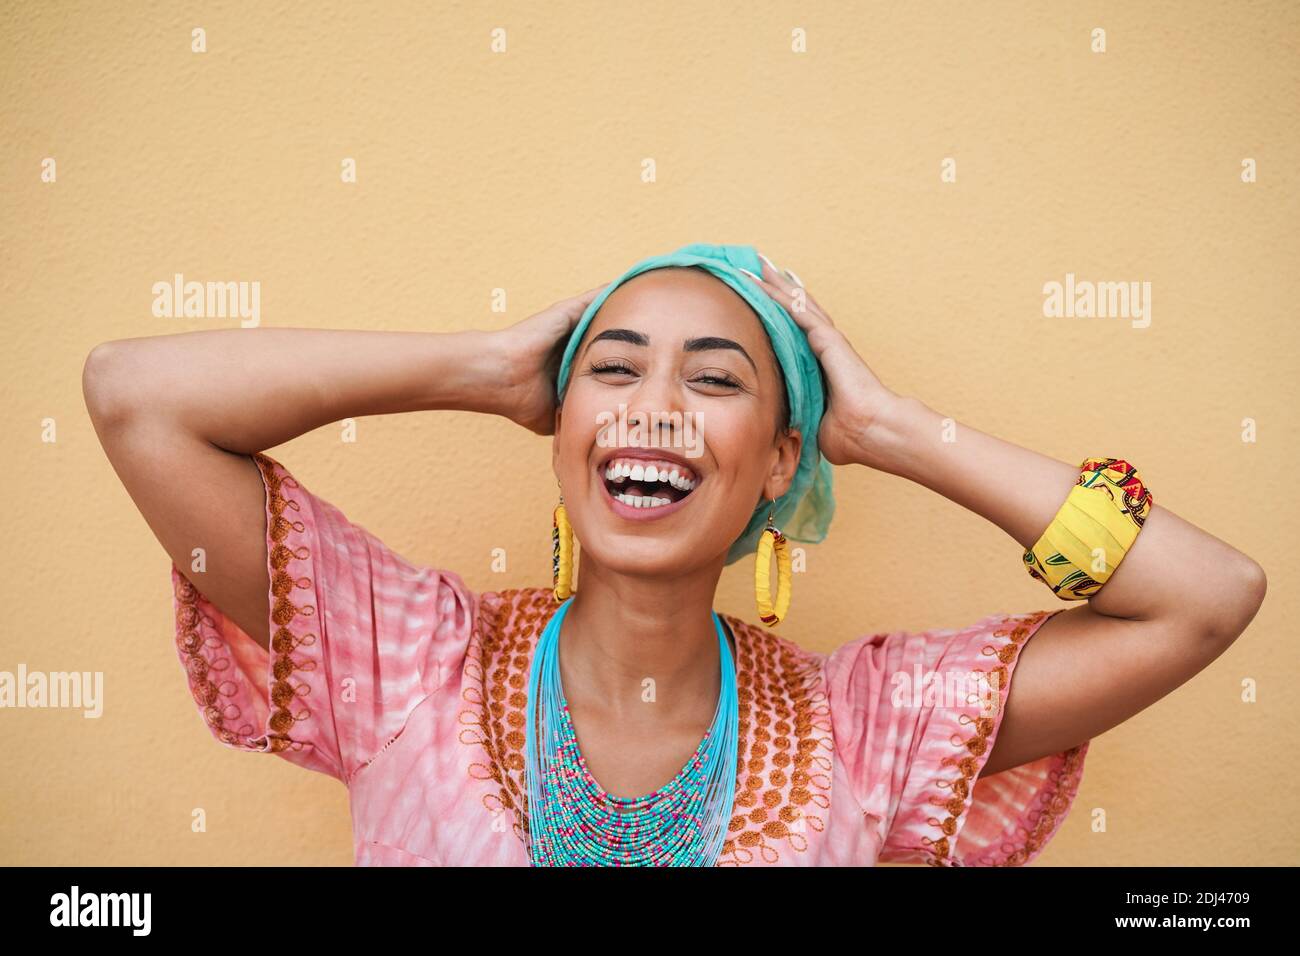 Porträt einer glücklichen schwarzen jungen Frau in traditionellen afrikanischen Kleid - Fokus auf Gesicht Stockfoto